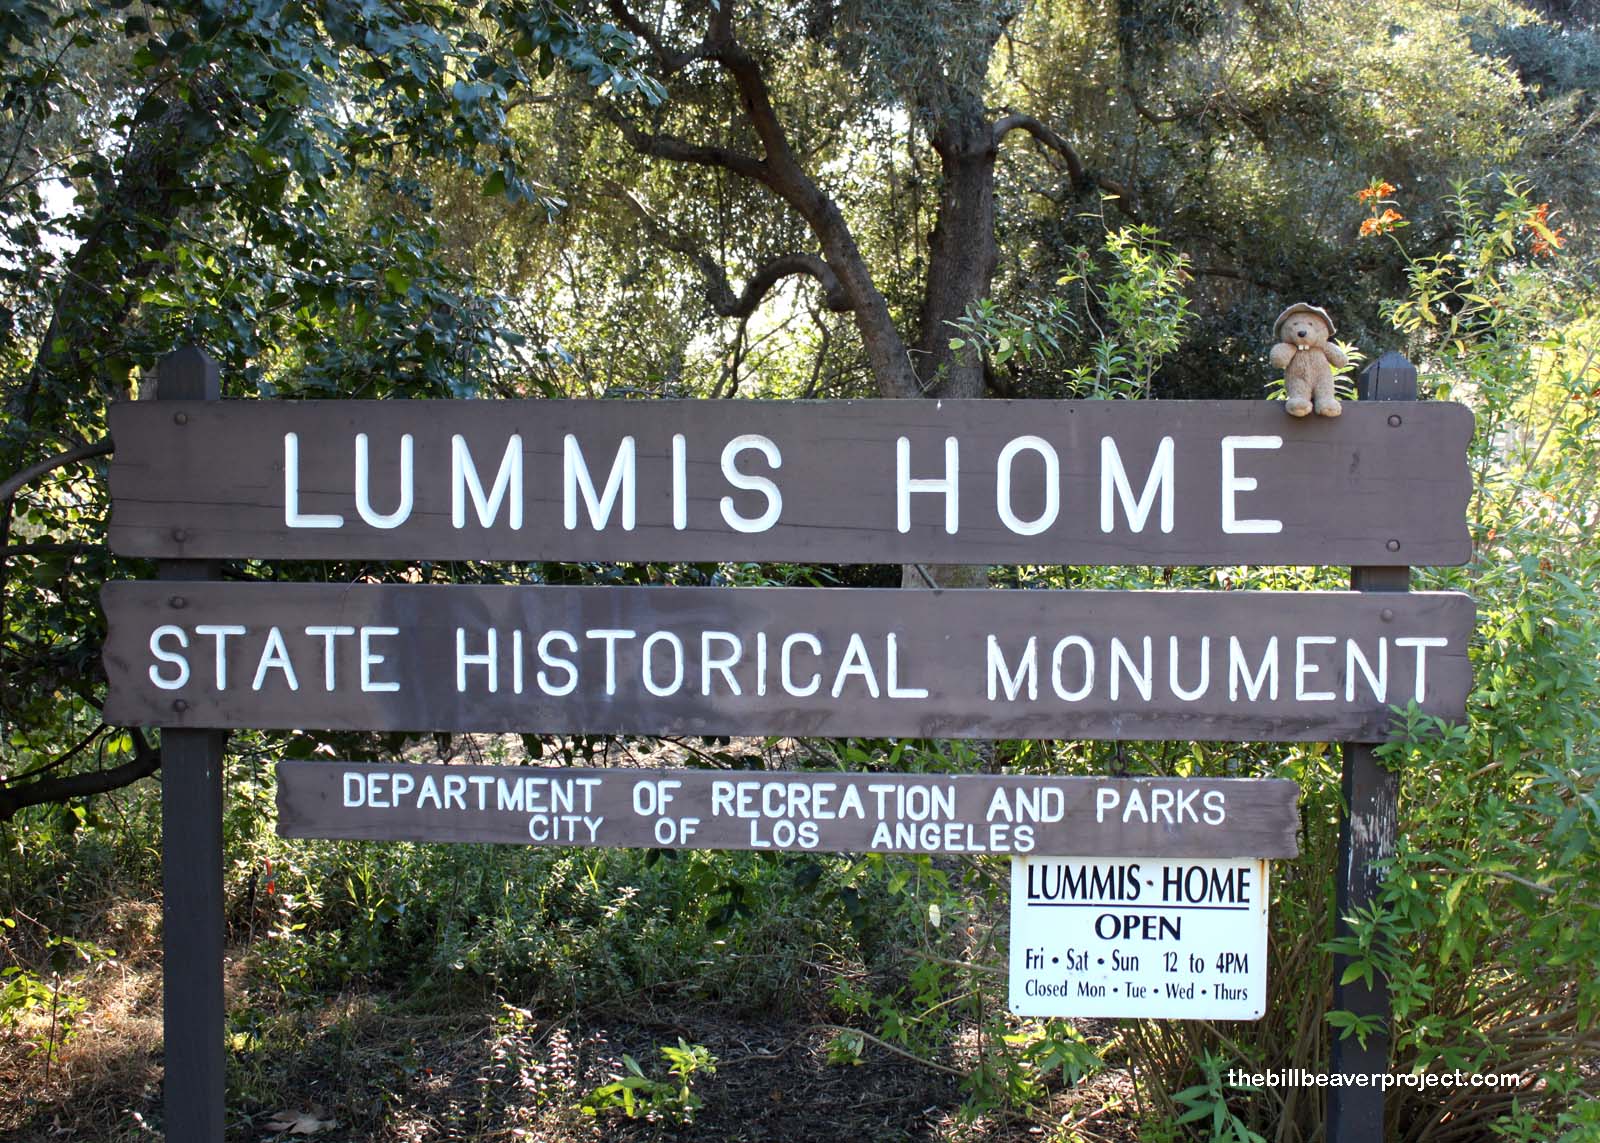 The Lummis Home